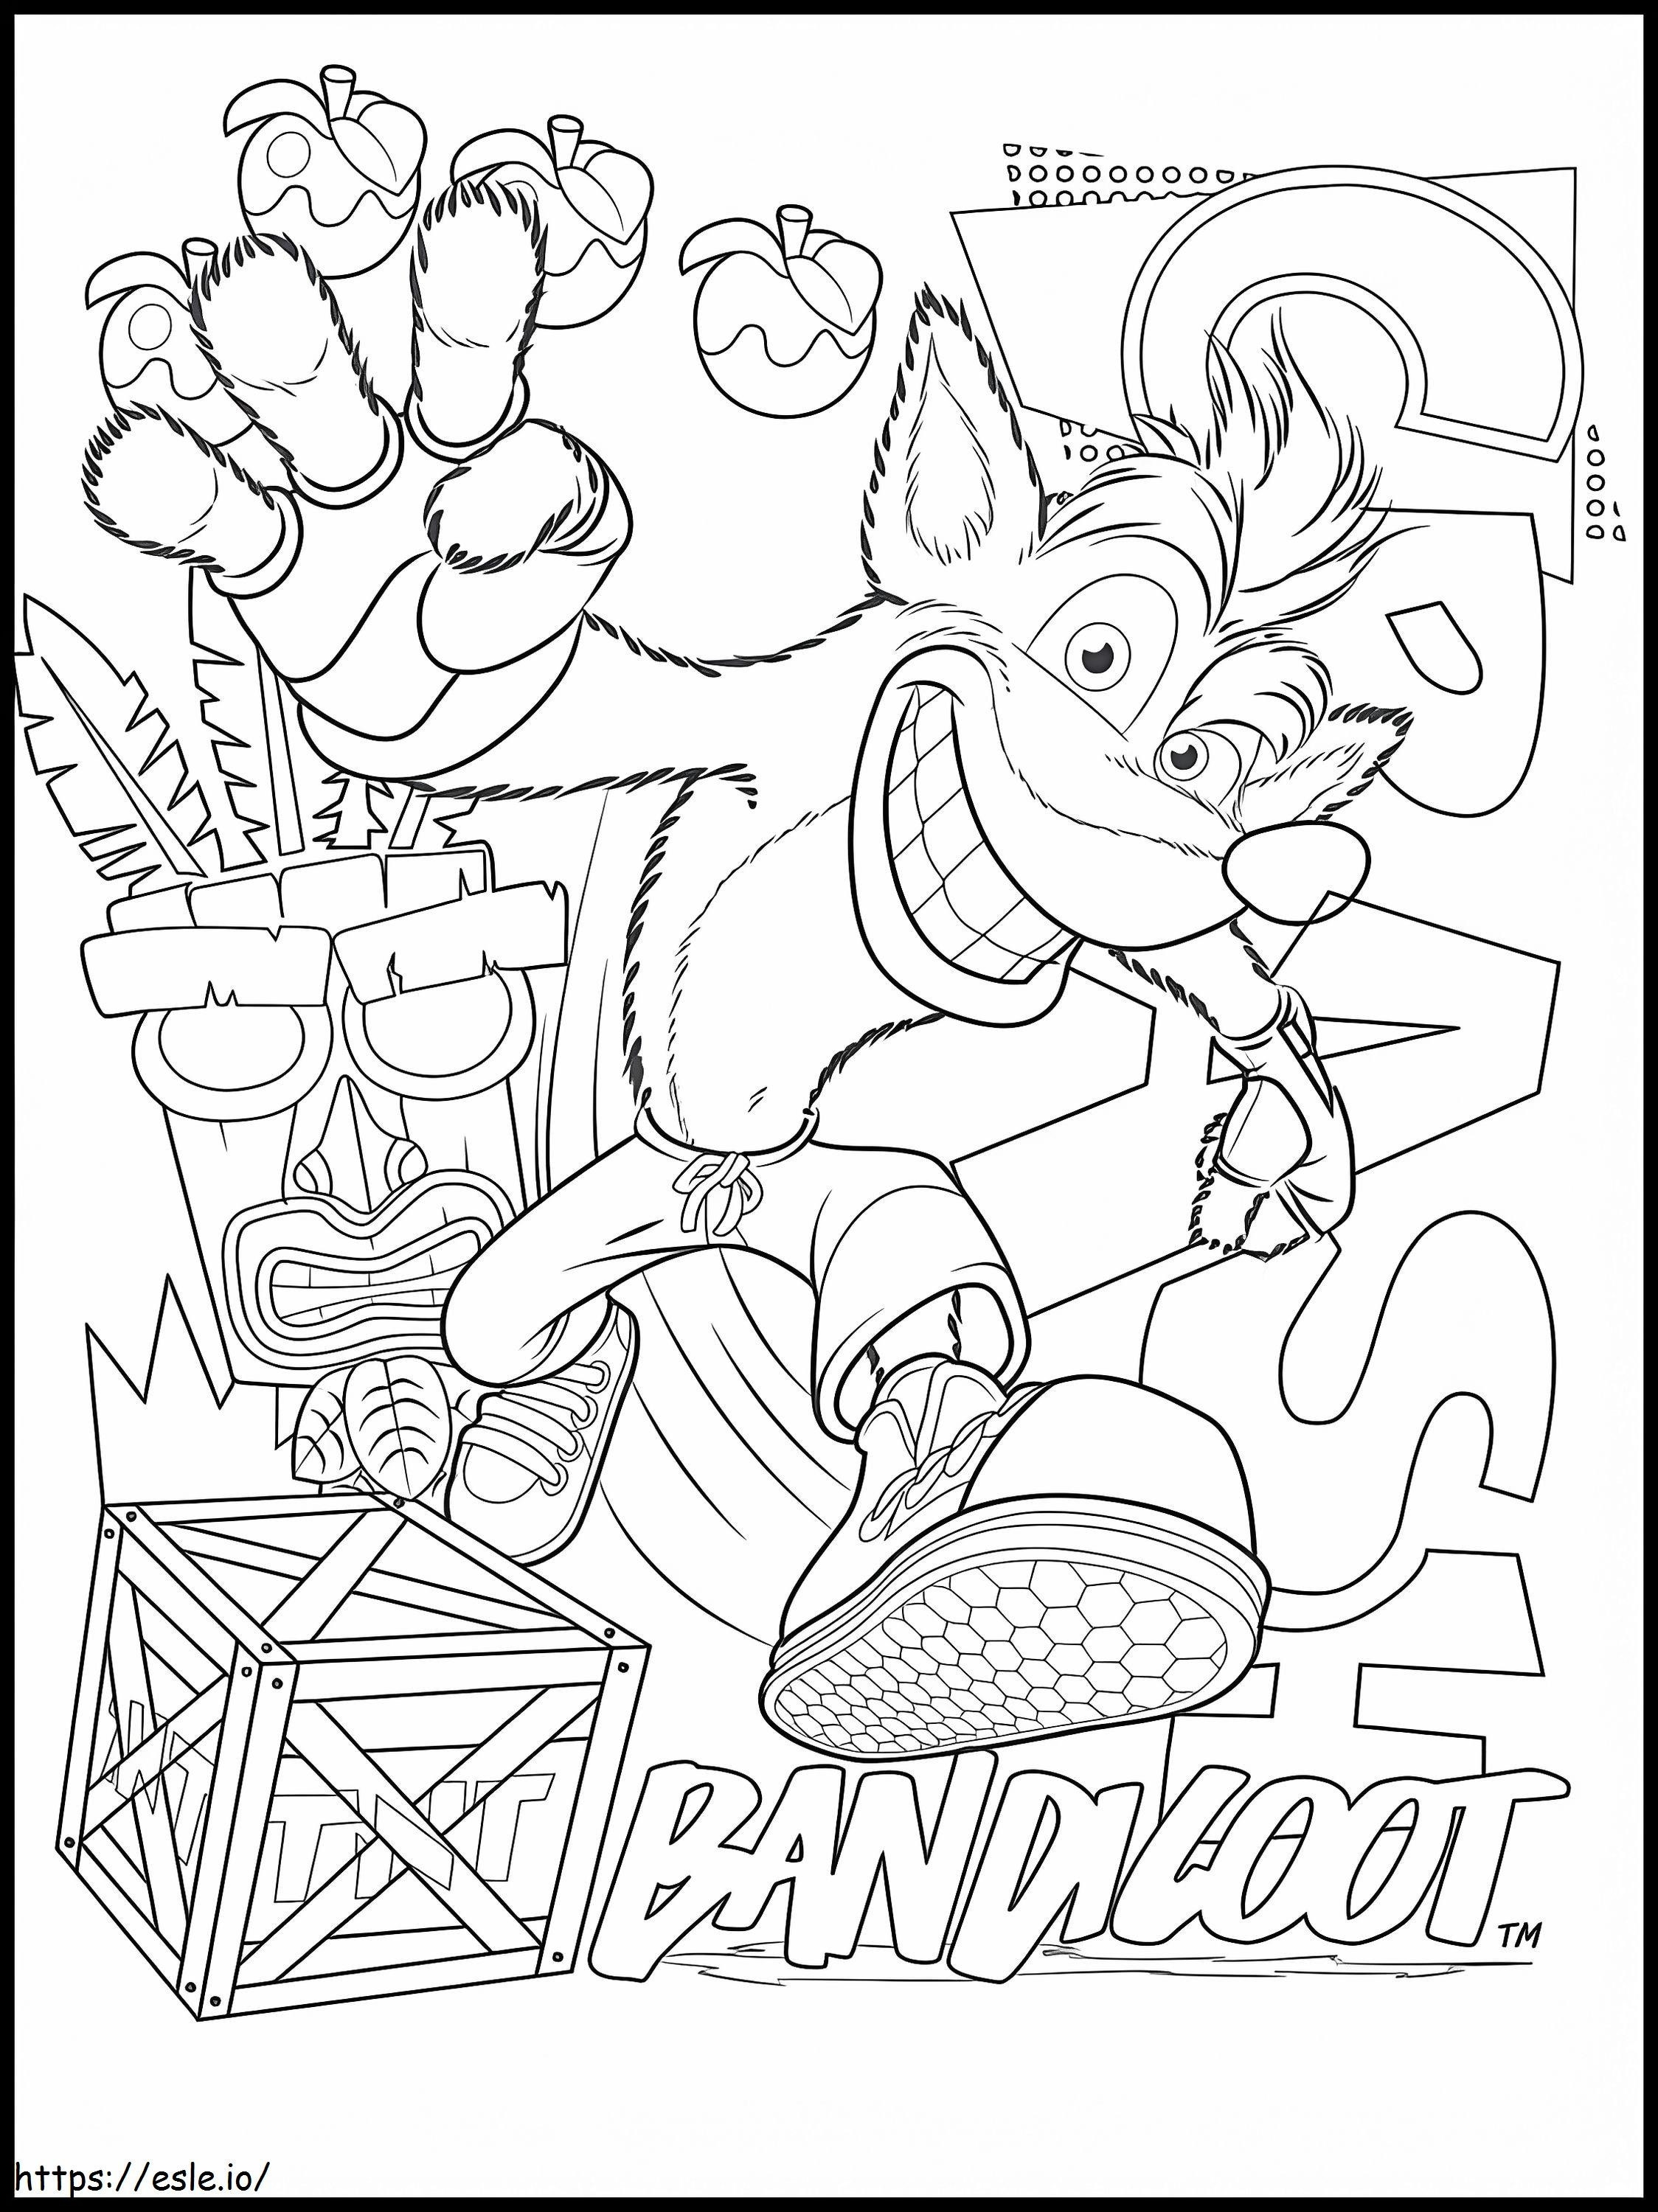 Crash Bandicoot 4 de colorat